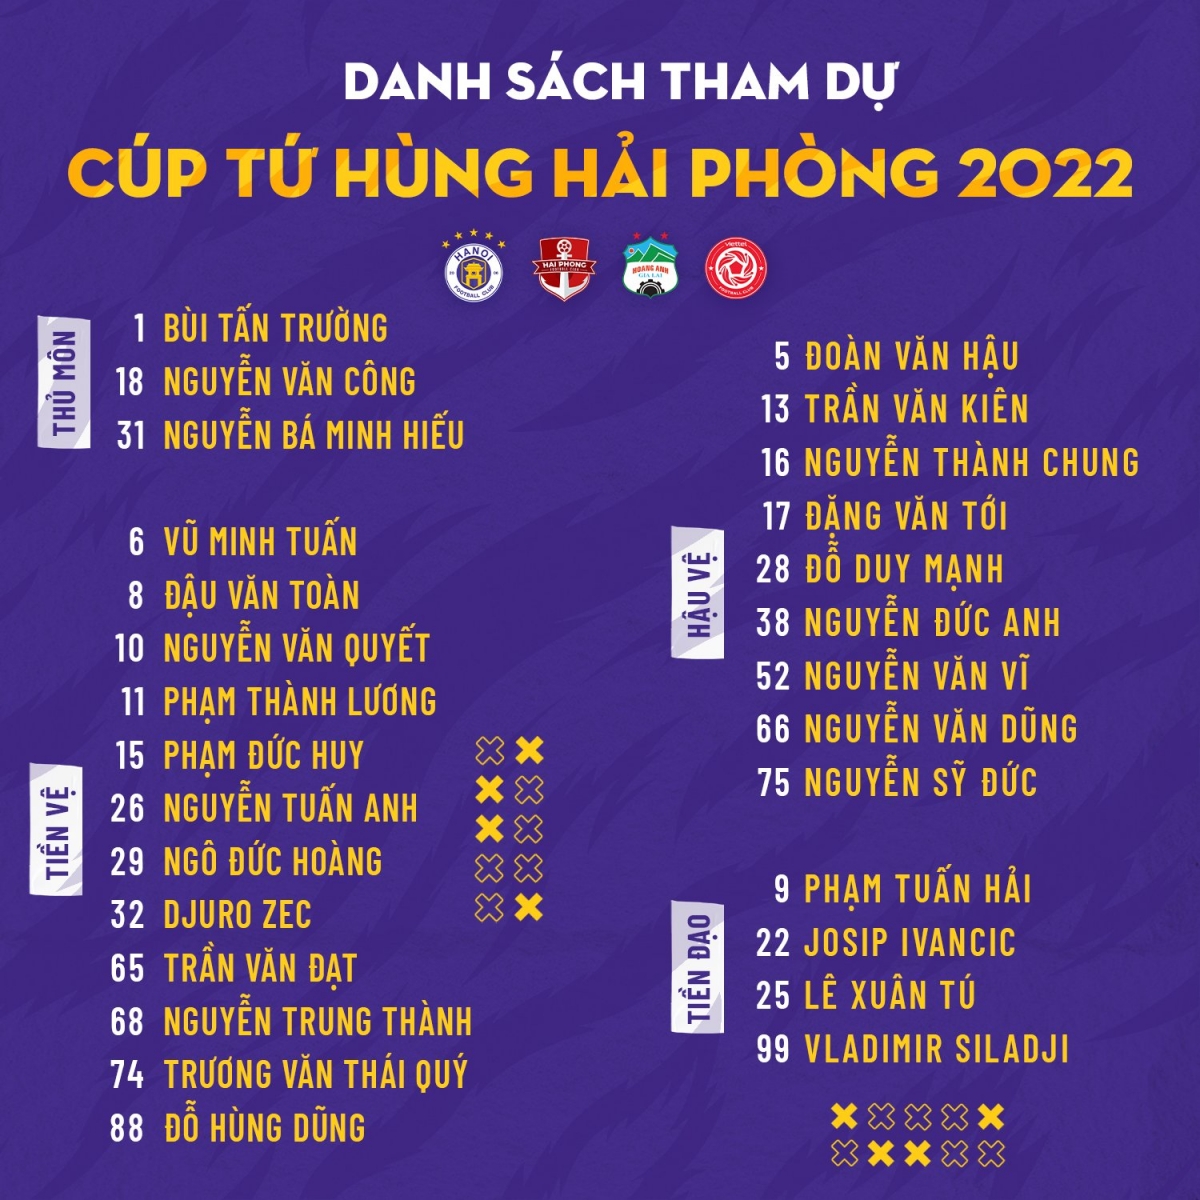 Đại thắng ĐKVĐ V.League ở Cúp Tứ hùng, CLB Hà Nội tìm ra 'phương án hoàn hảo' thay thế Quang Hải?